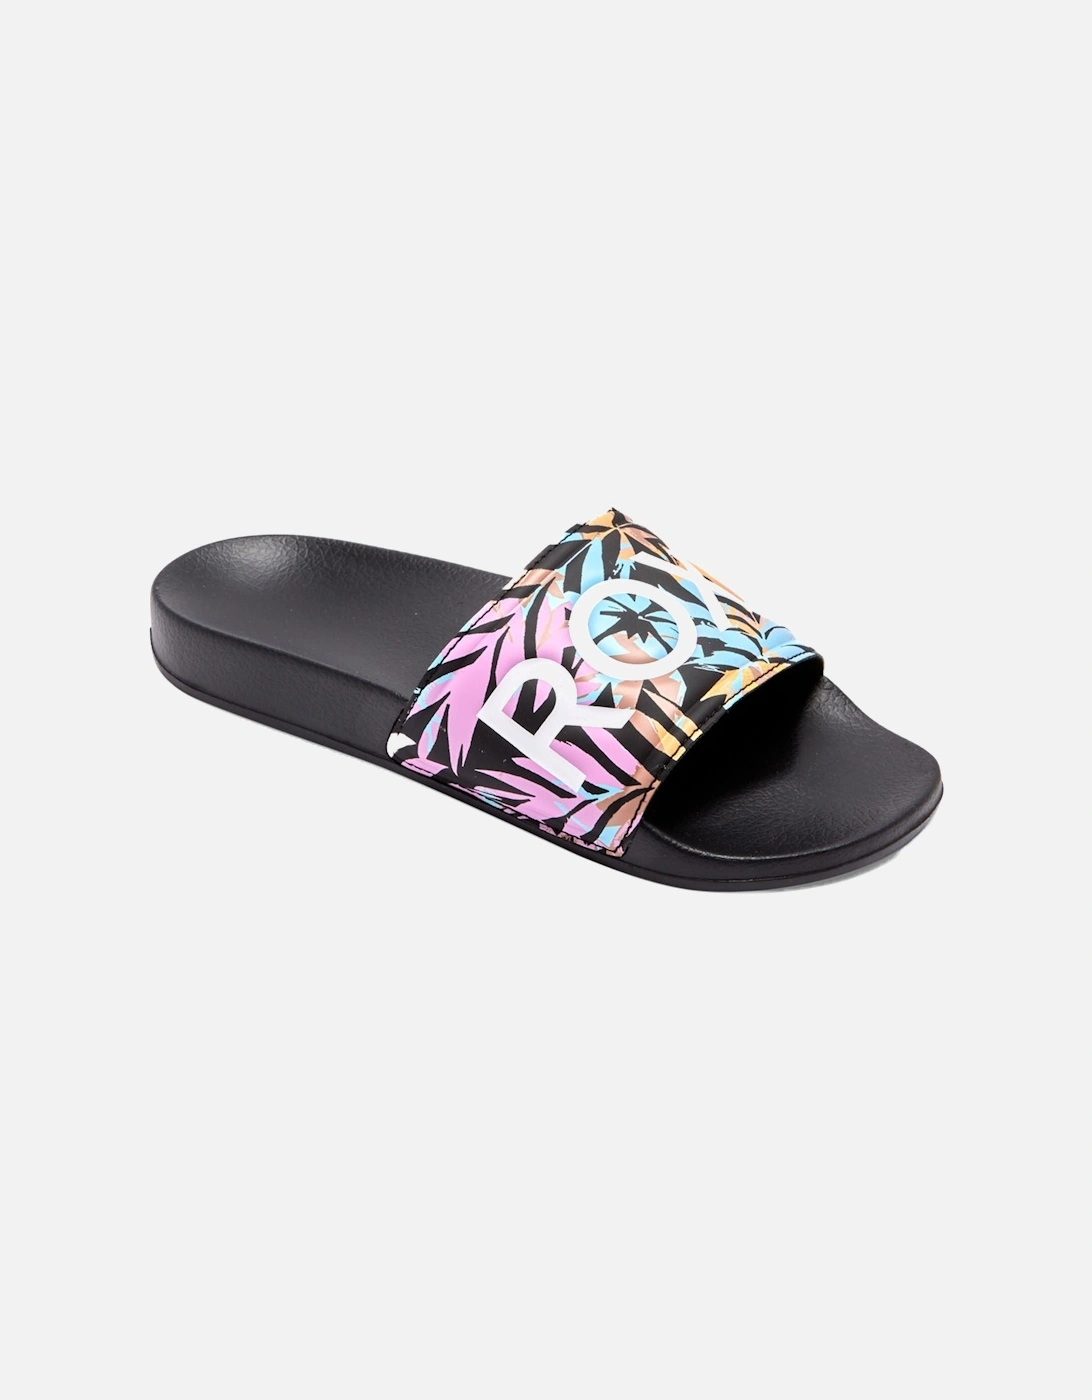 Womens Slippy Summer Sandals Sliders